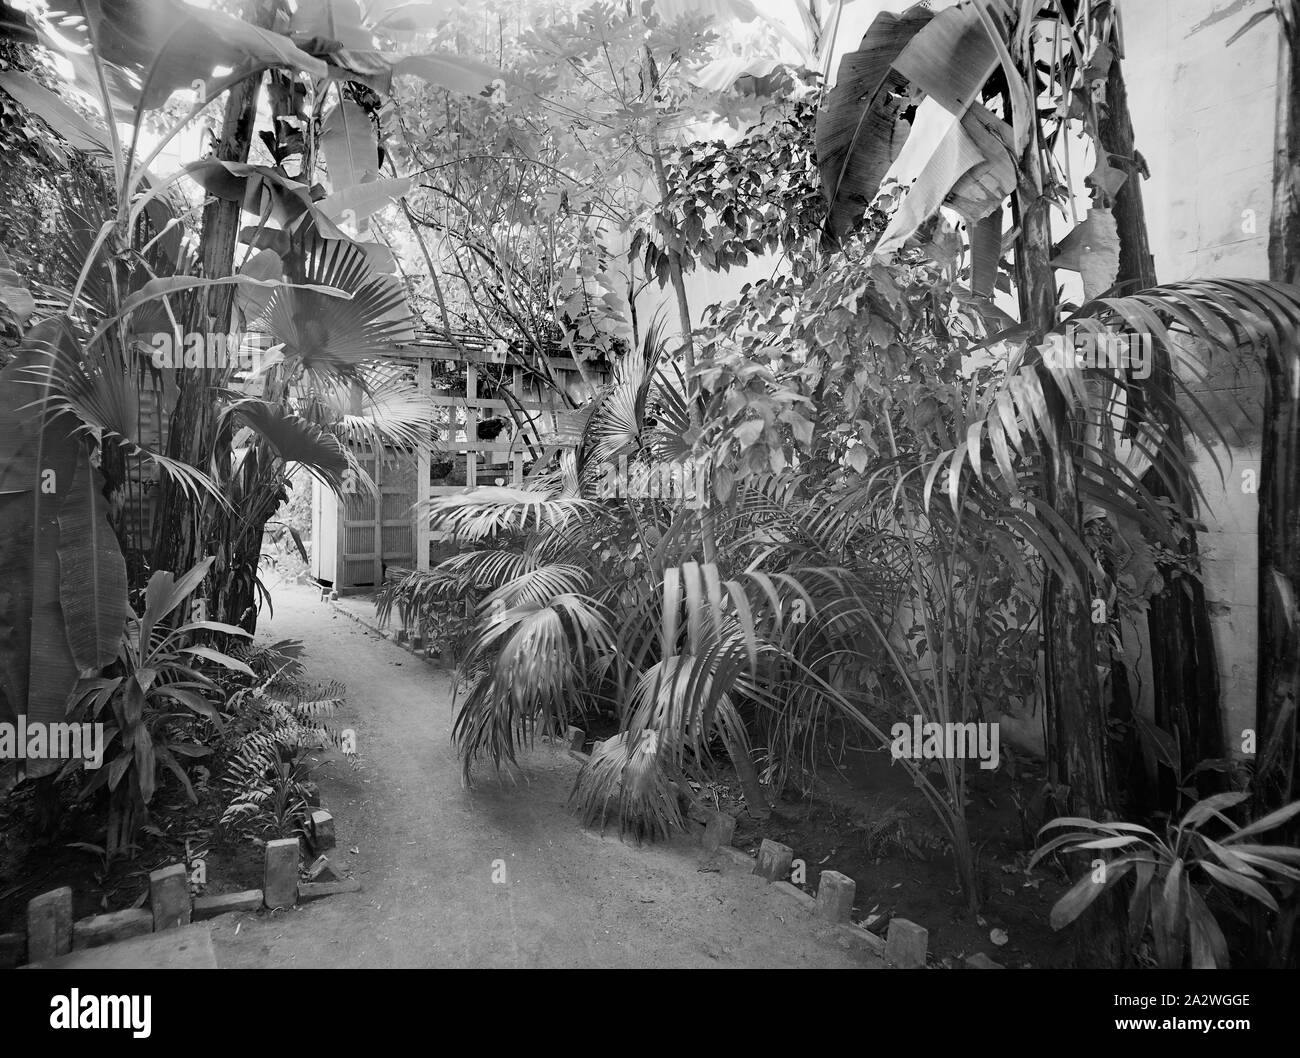 Negativ, Garten, Kodak Niederlassung, Townsville, QLD, 1930er Jahre, Schwarz-weiß Film negativ Der Garten an der Rückseite des Kodak Australasia Pty Ltd Filiale und die Bearbeitung am selben Tag Labor an der Flinders St, Townsville, Queensland, in den 1930er Jahren. Diese Kodak Shop wurde im Jahre 1920 gebaut, mit der zweiten Geschichte im Jahre 1929 aufgenommen. Oben war die Verarbeitung lab für Drucken und entwickeln, und unten war das Ladengeschäft. Auf der Rückseite gibt es einen dichten Stockfoto